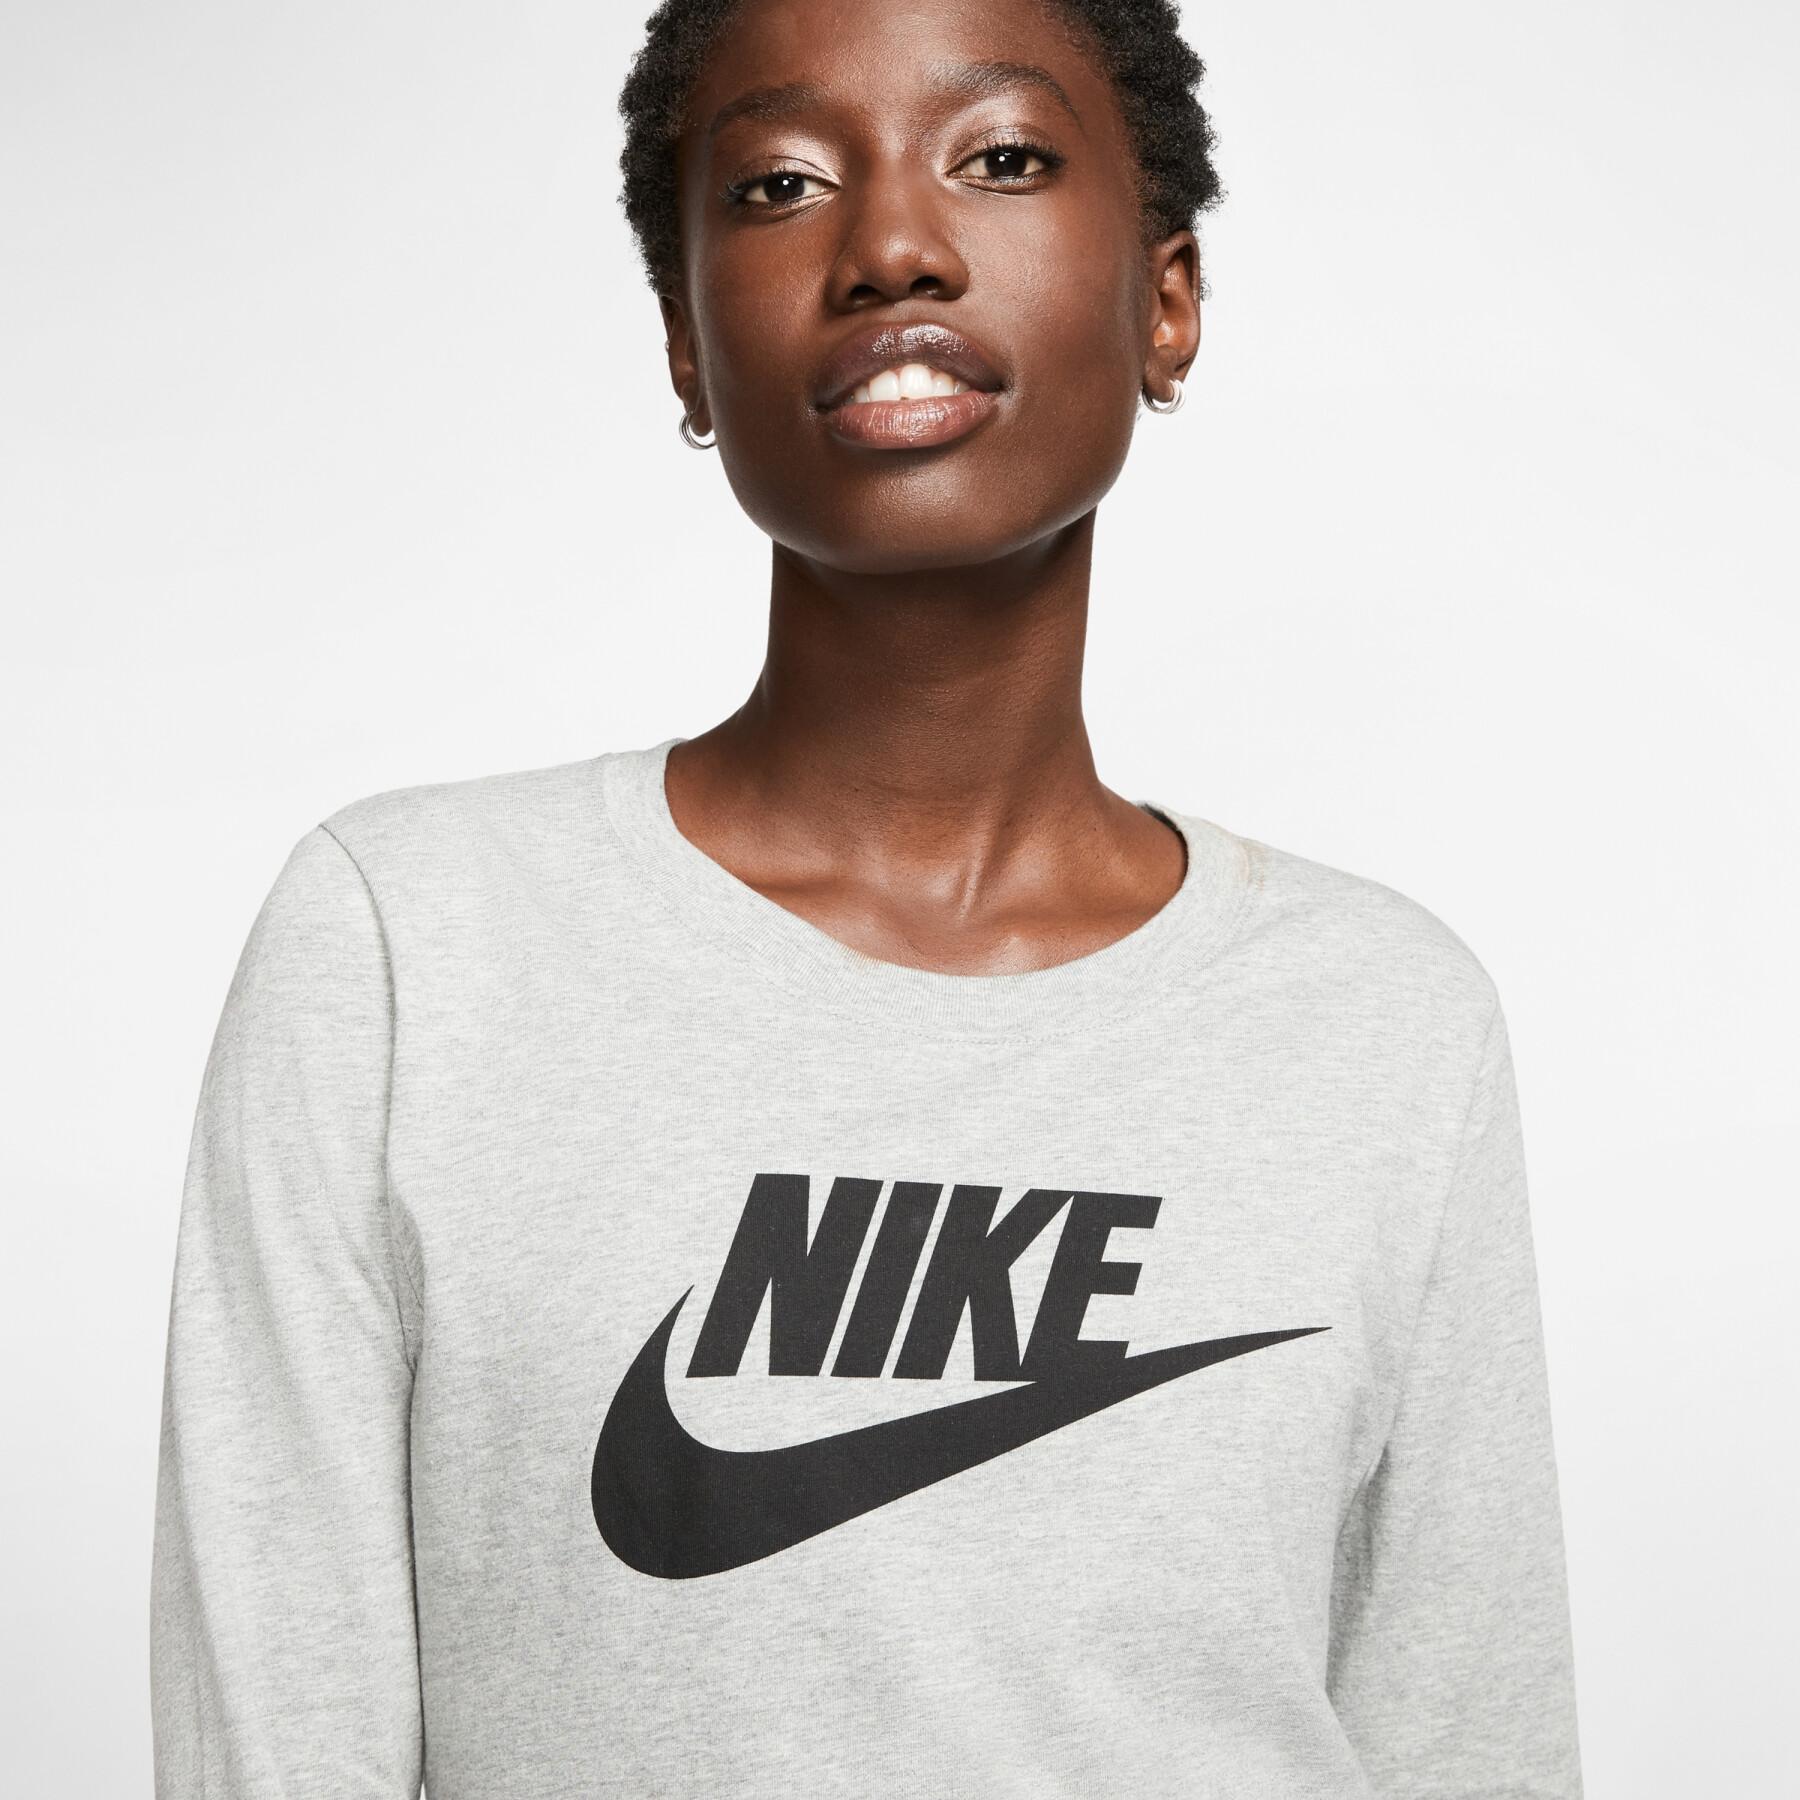 Women's T-shirt Nike sportswear